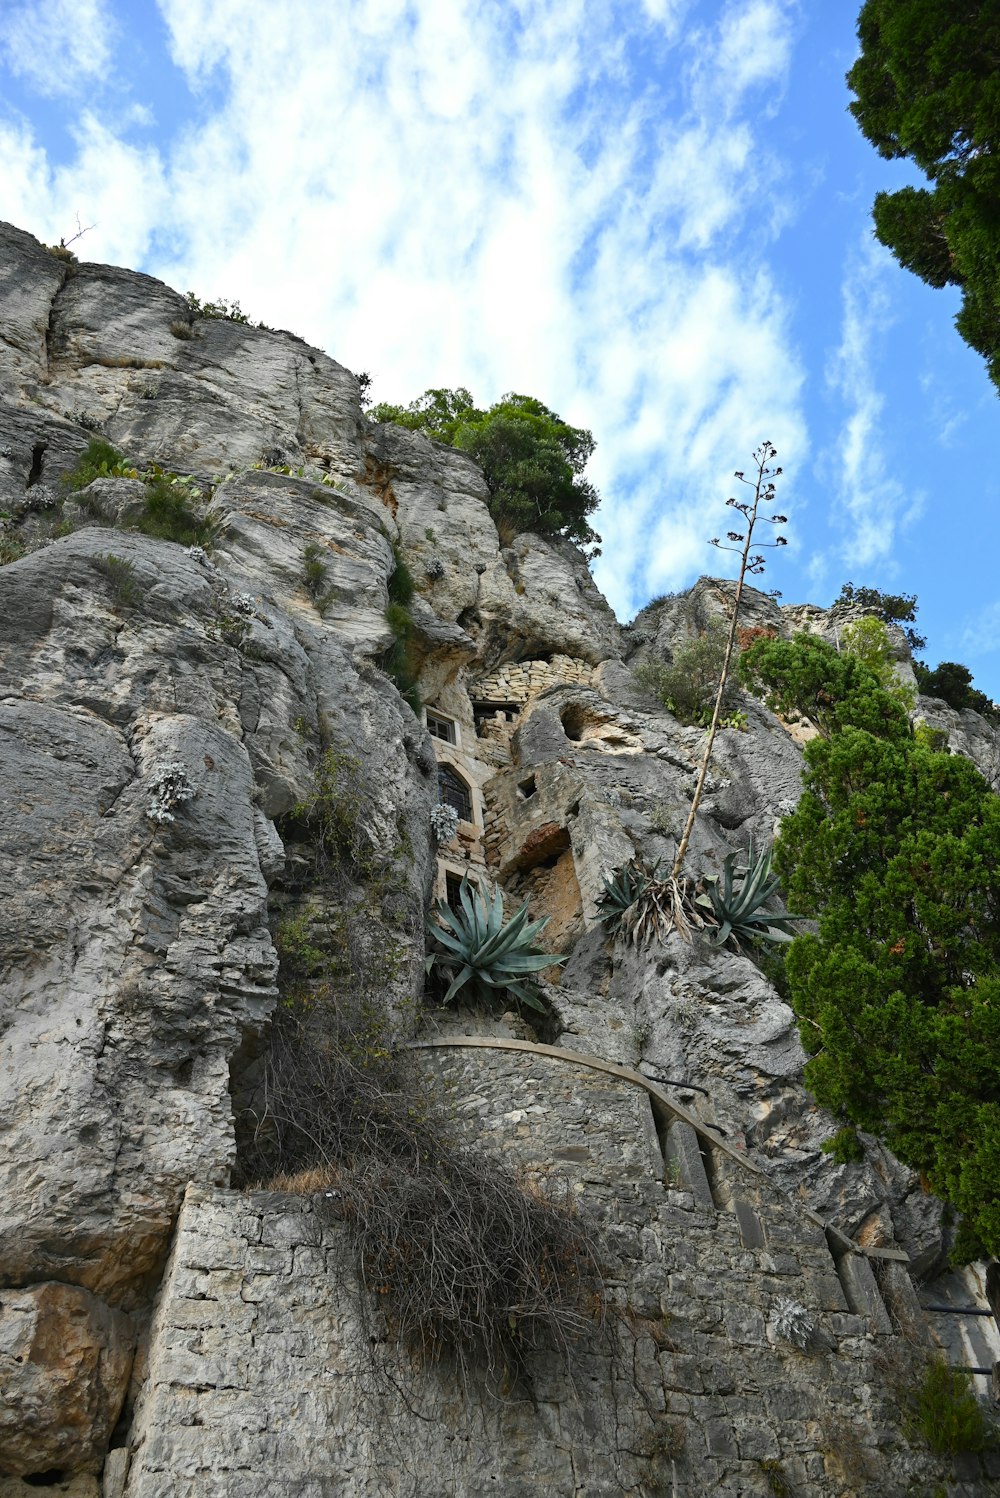 とても背の高い岩の崖で、そこからたくさんの植物が生えています